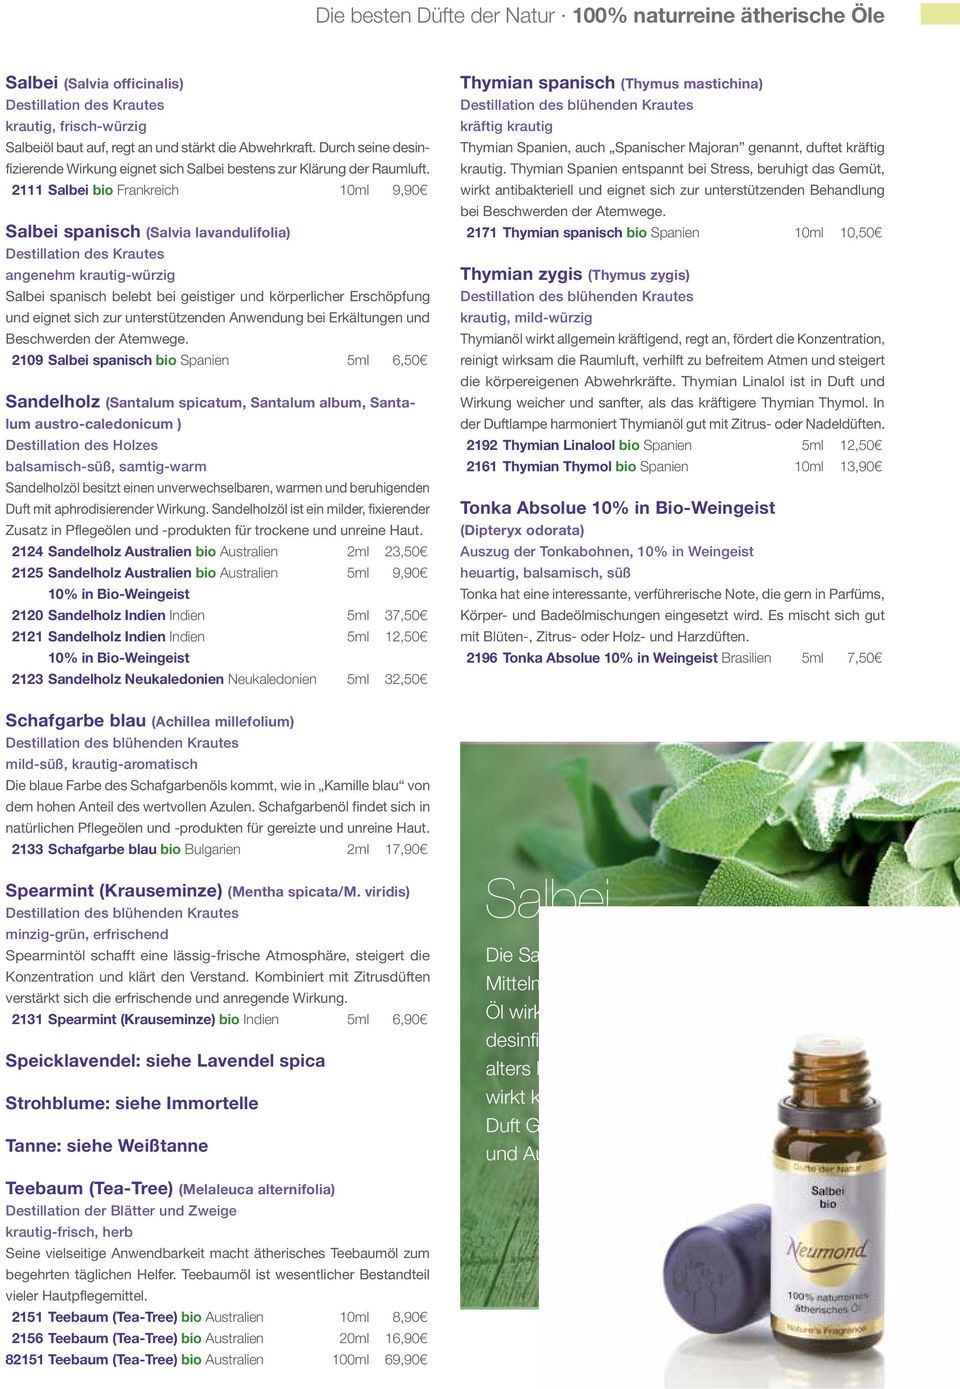 2111 Salbei bio Frankreich 10ml 9,90 Salbei spanisch (Salvia lavandulifolia) Destillation des Krautes angenehm krautig-würzig Salbei spanisch belebt bei geistiger und körperlicher Erschöpfung und